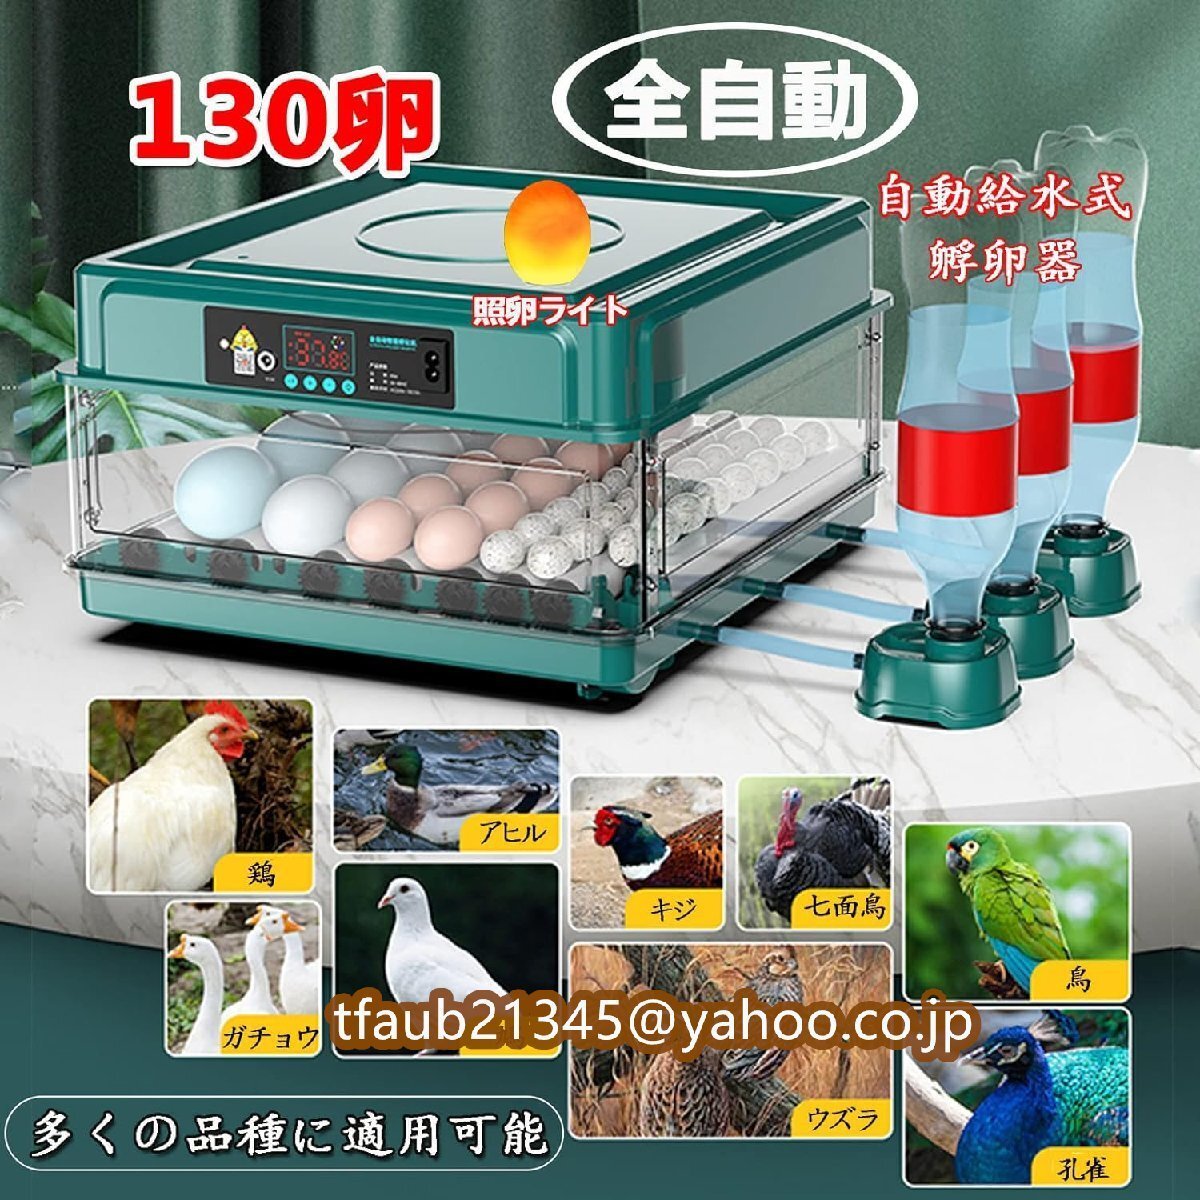 自動インキュベーター 自動孵卵器 鳥類専用ふ卵器 自動温度制御 自動給水式 簡単操作 重電源 低騒音 子供教育用 家庭用 鳥の孵化用-130卵